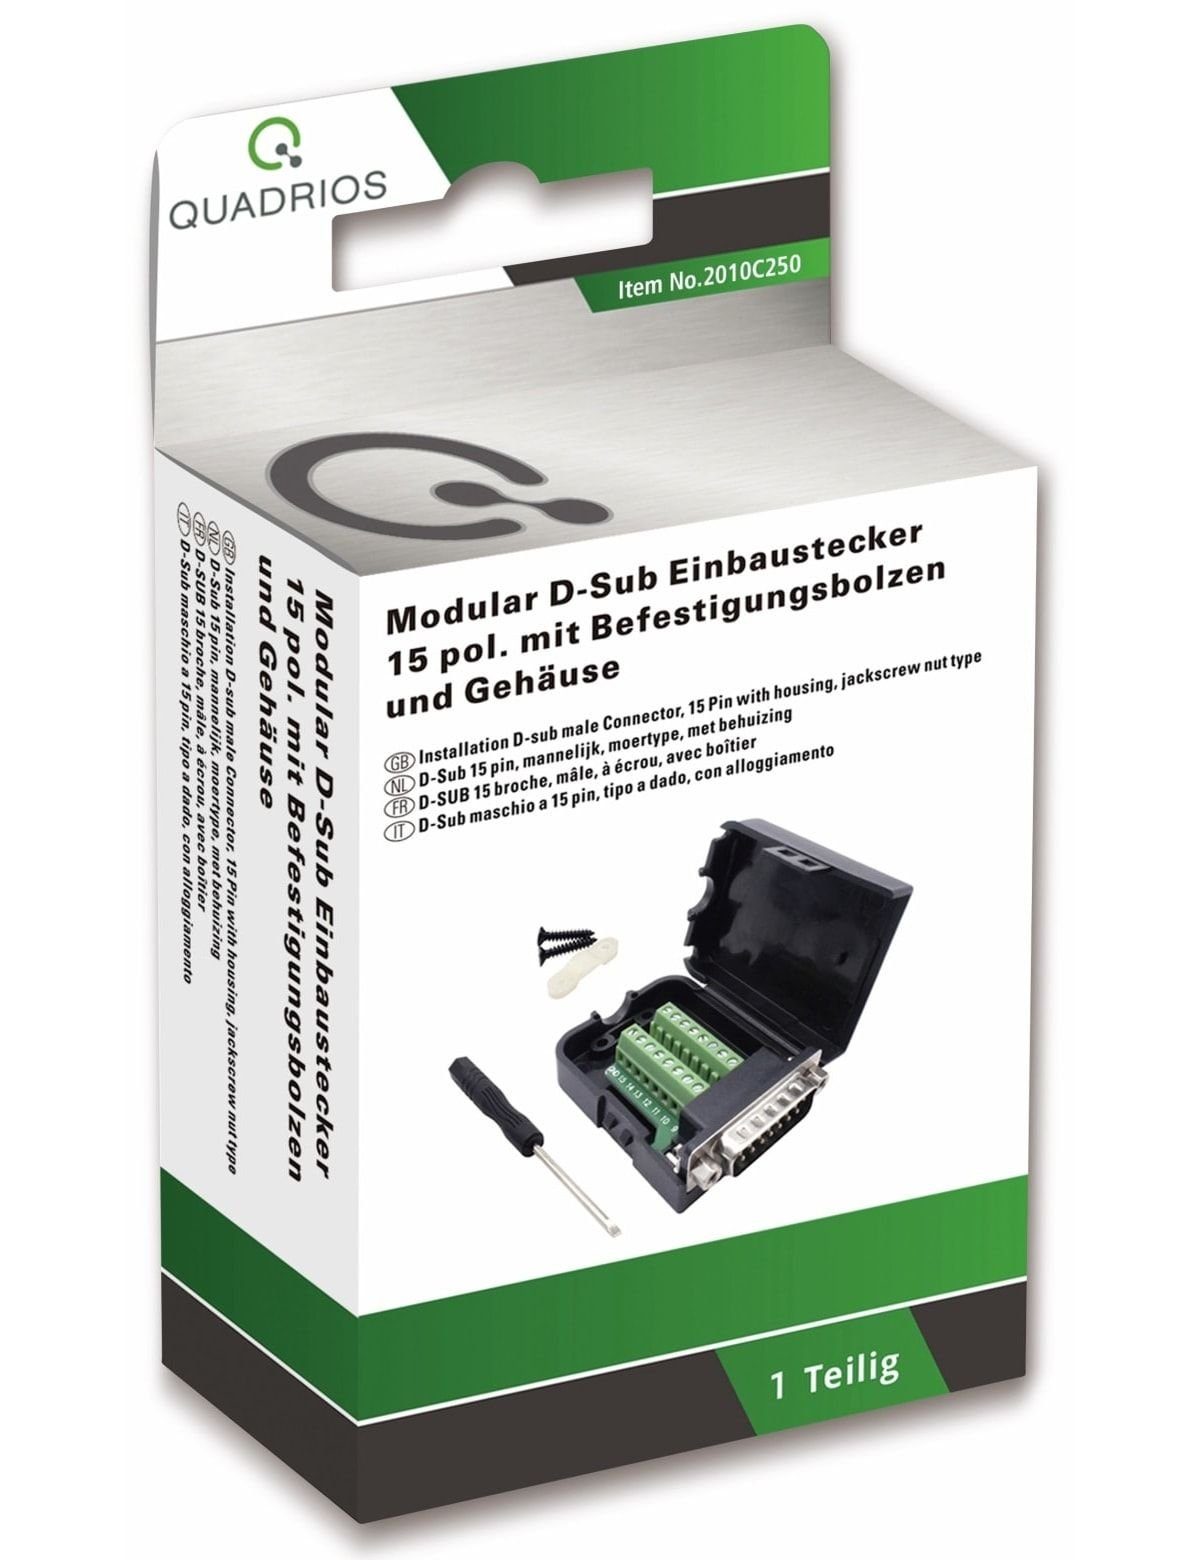 Quadrios Klemmen QUADRIOS, 2010C250, USB-Modular-Set, D-Sub